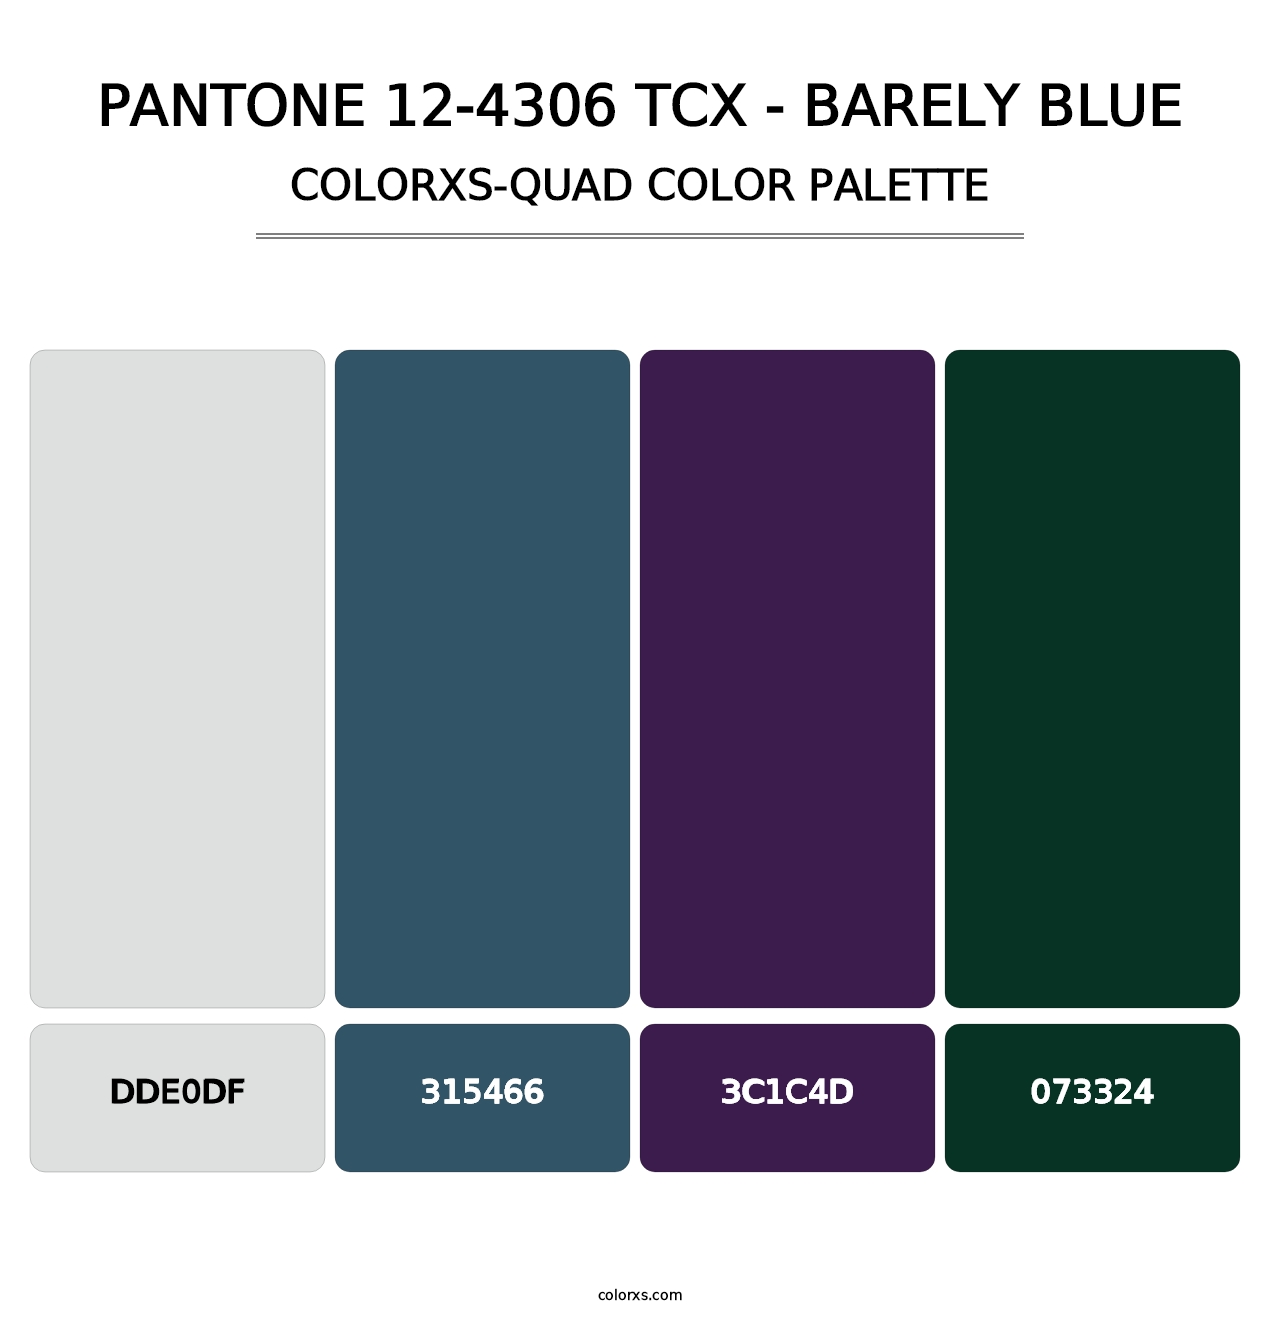 PANTONE 12-4306 TCX - Barely Blue - Colorxs Quad Palette